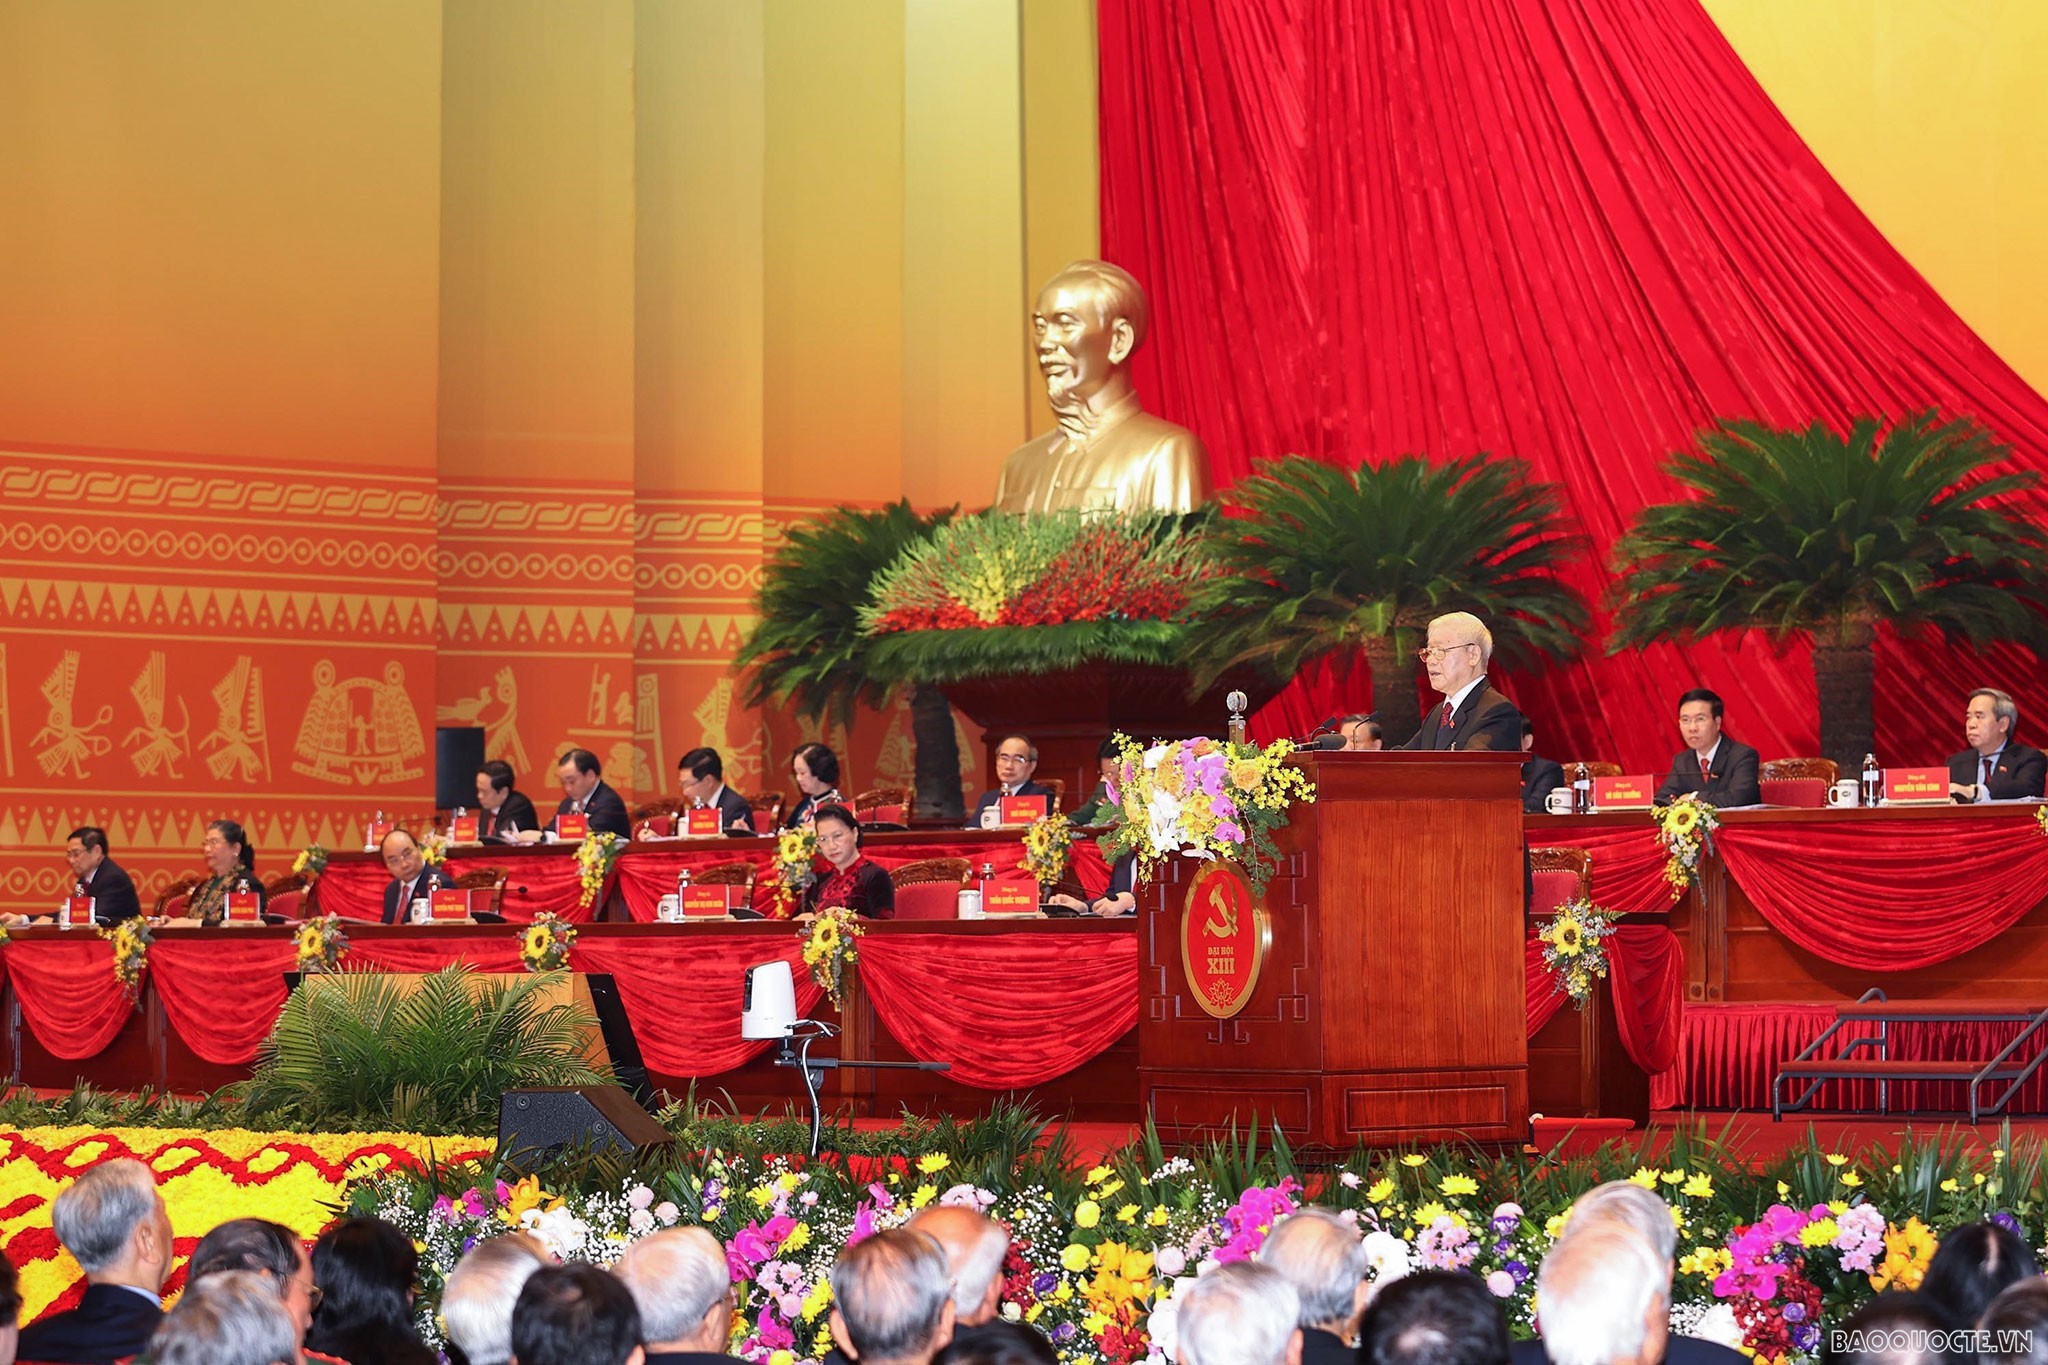 Tổng Bí thư, Chủ tịch nước Nguyễn Phú Trọng thay mặt Ban chấp hành Trung ương XII đọc báo cáo về văn kiện Đại hội XIII